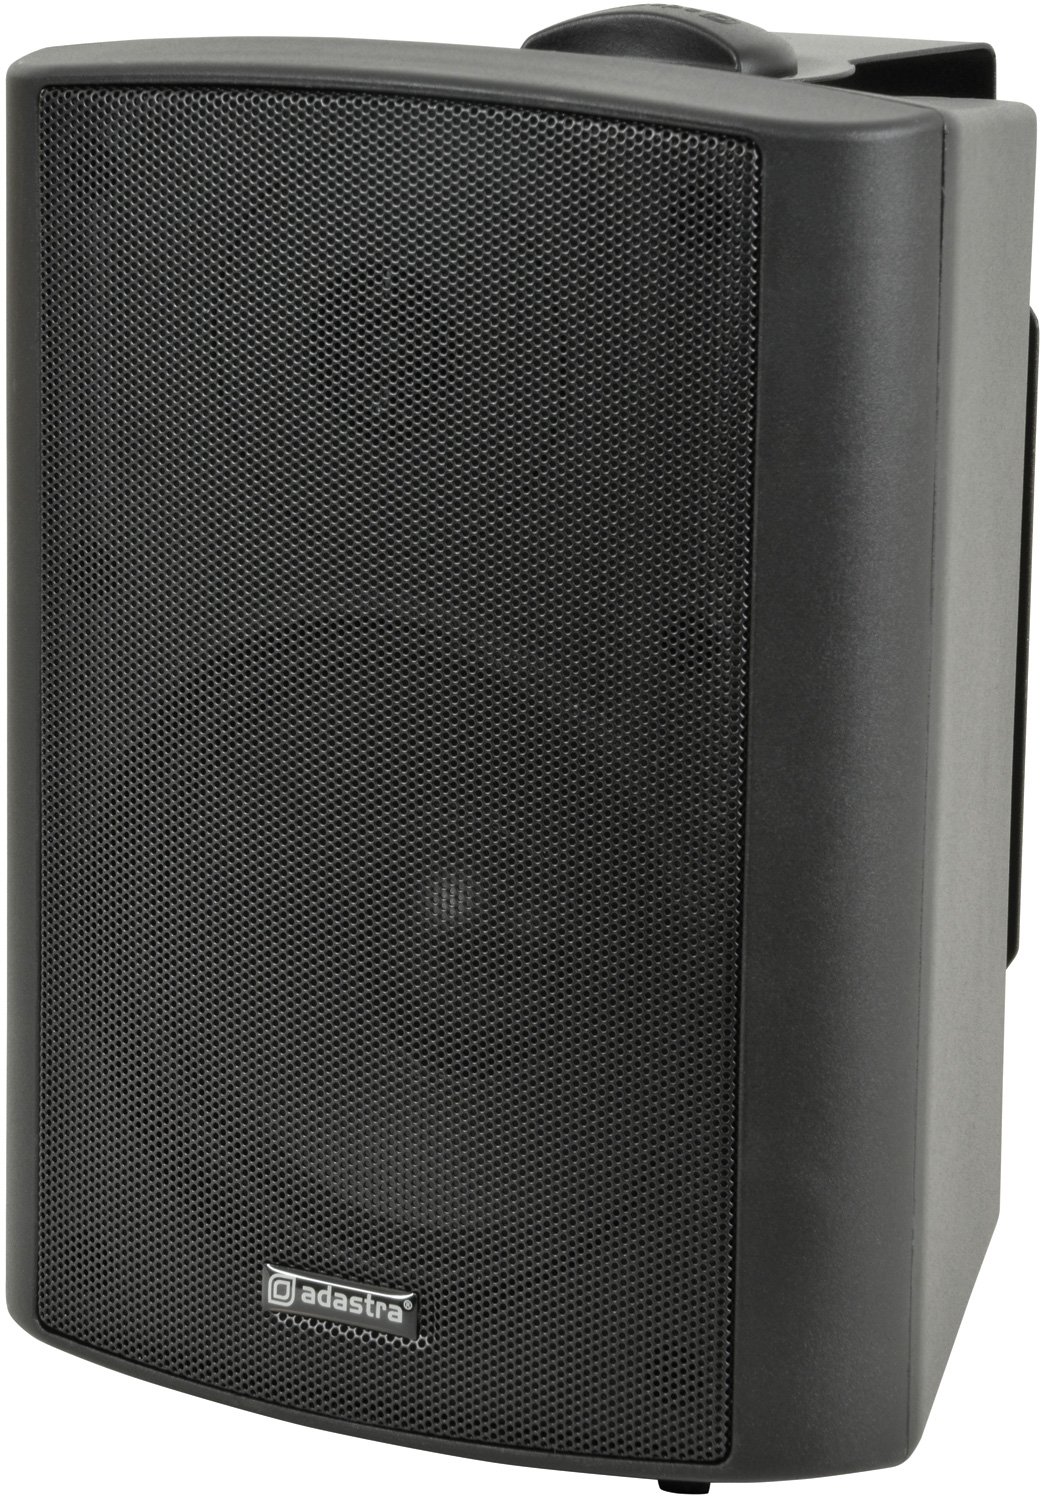 BP Series - 100V Weatherproof Speakers BP5V-B 100V 5.25" background speaker black